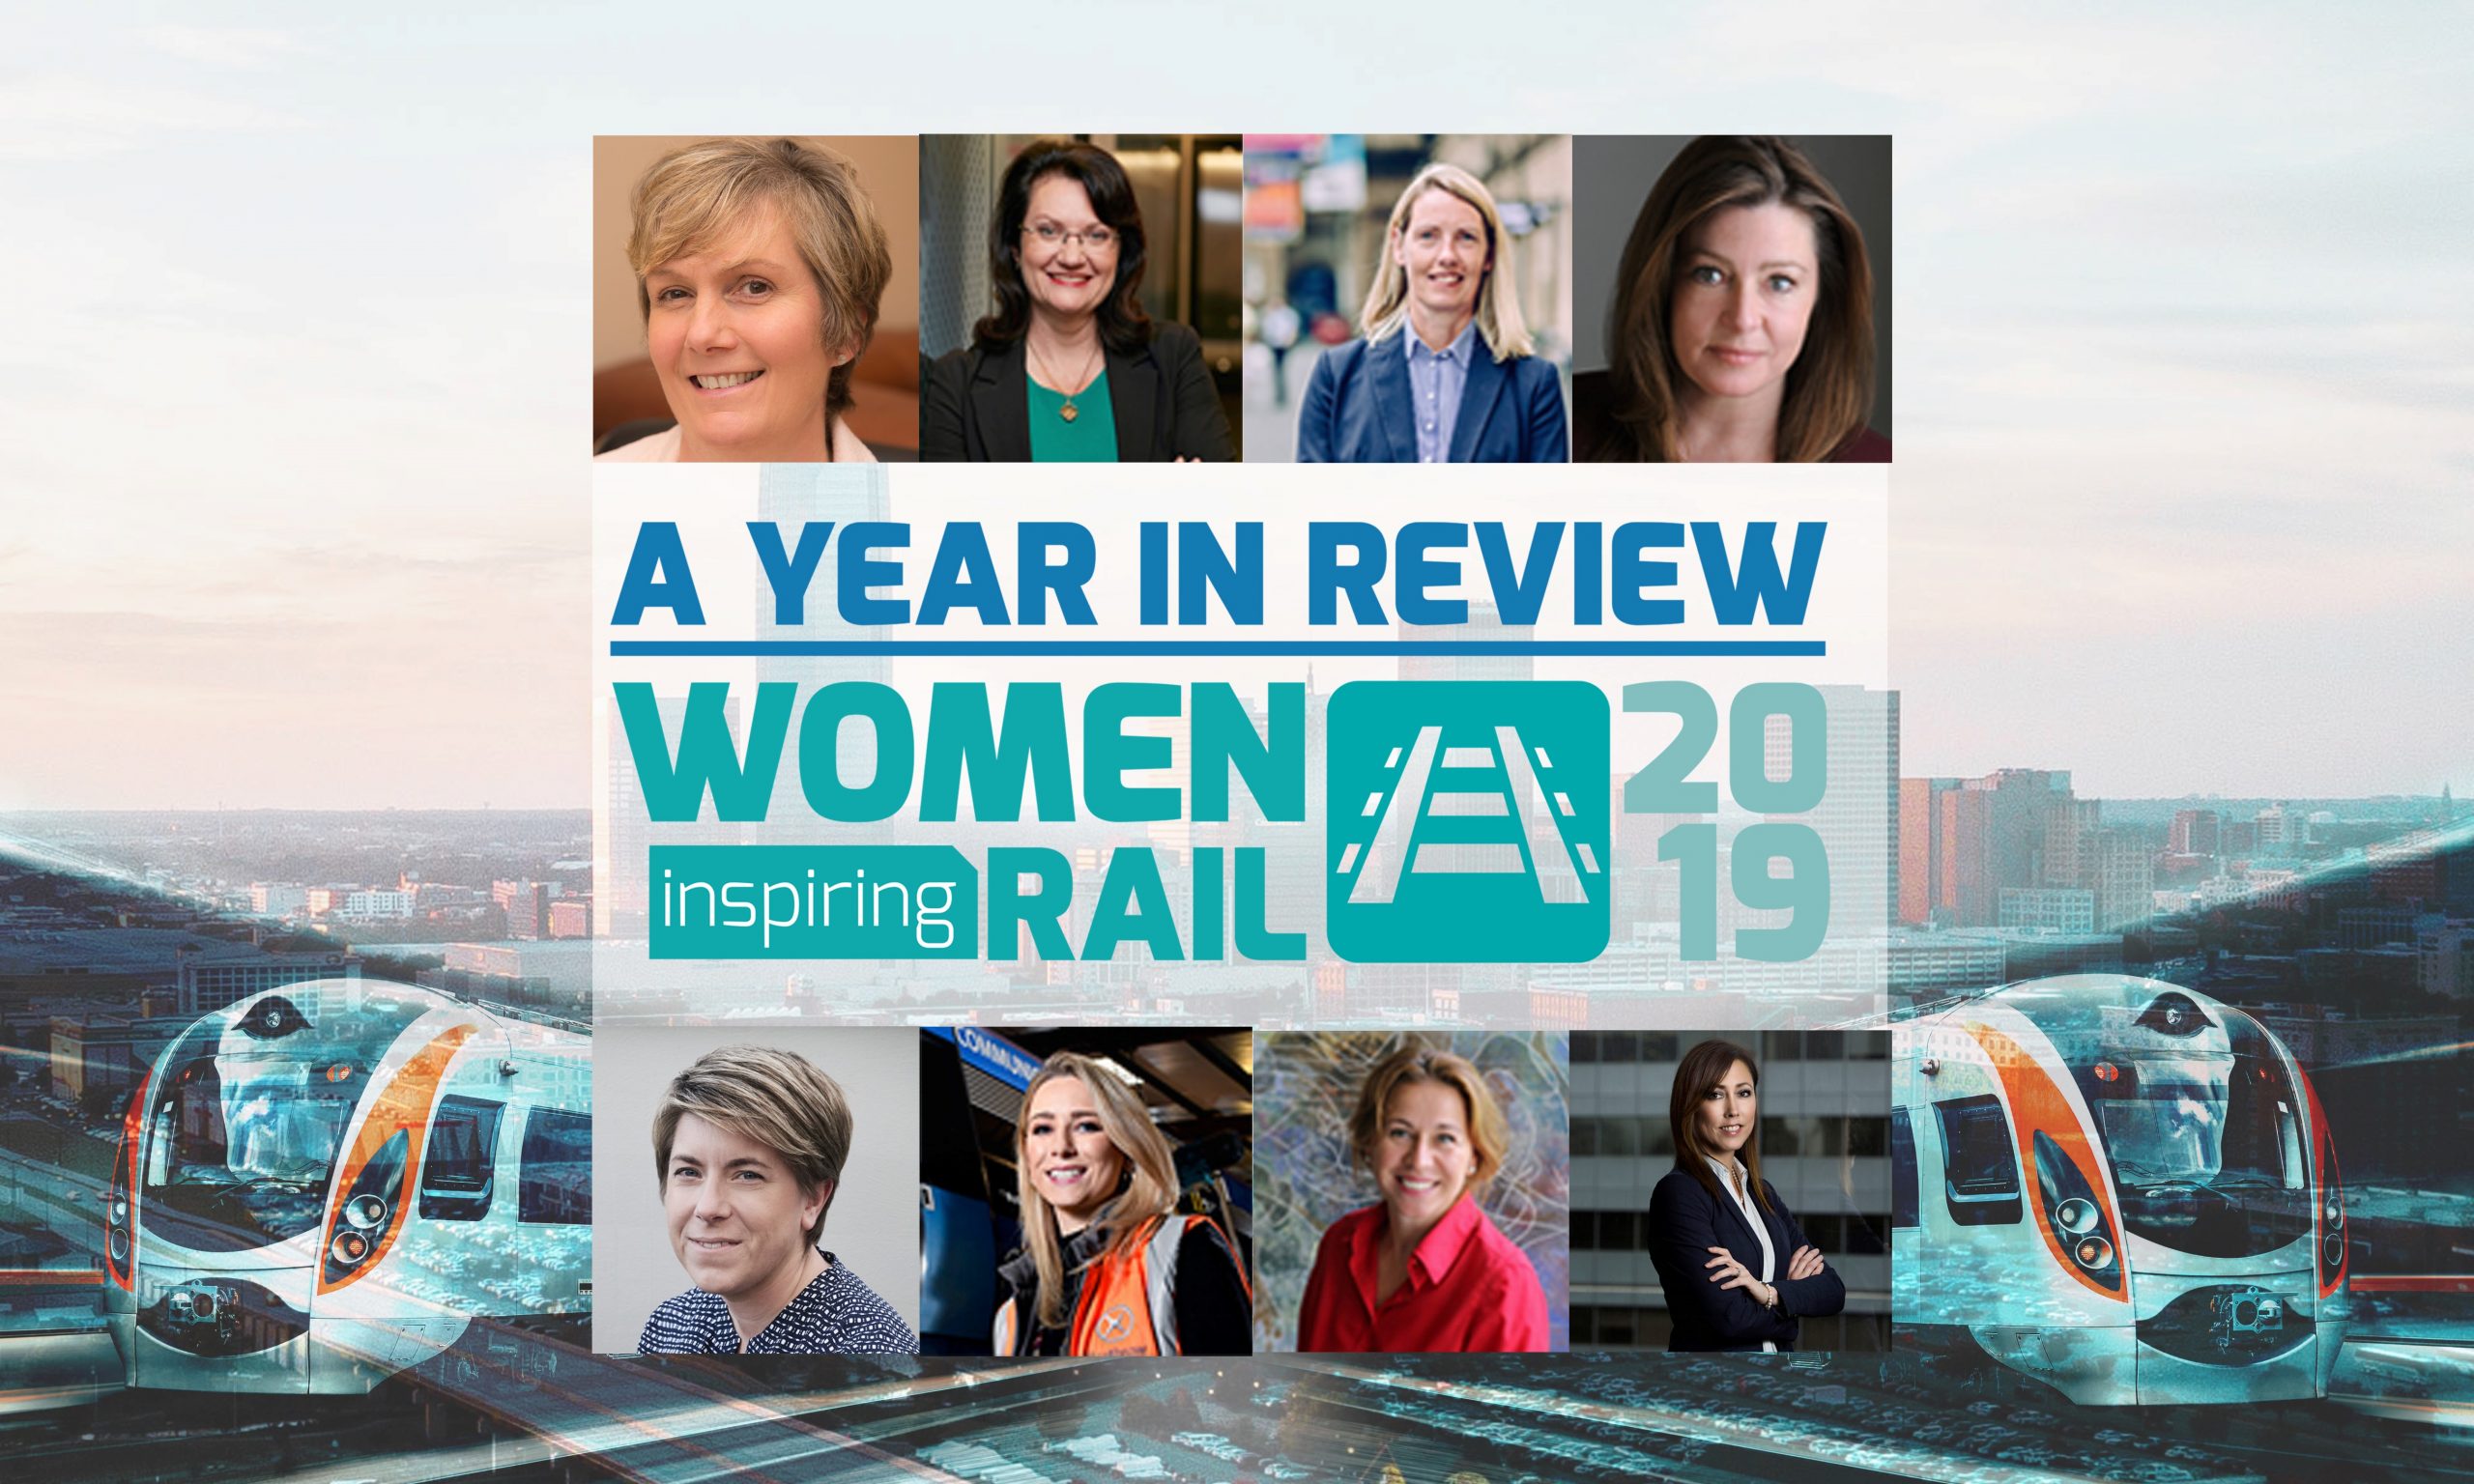 女性鼓舞人心的铁路:一年回顾